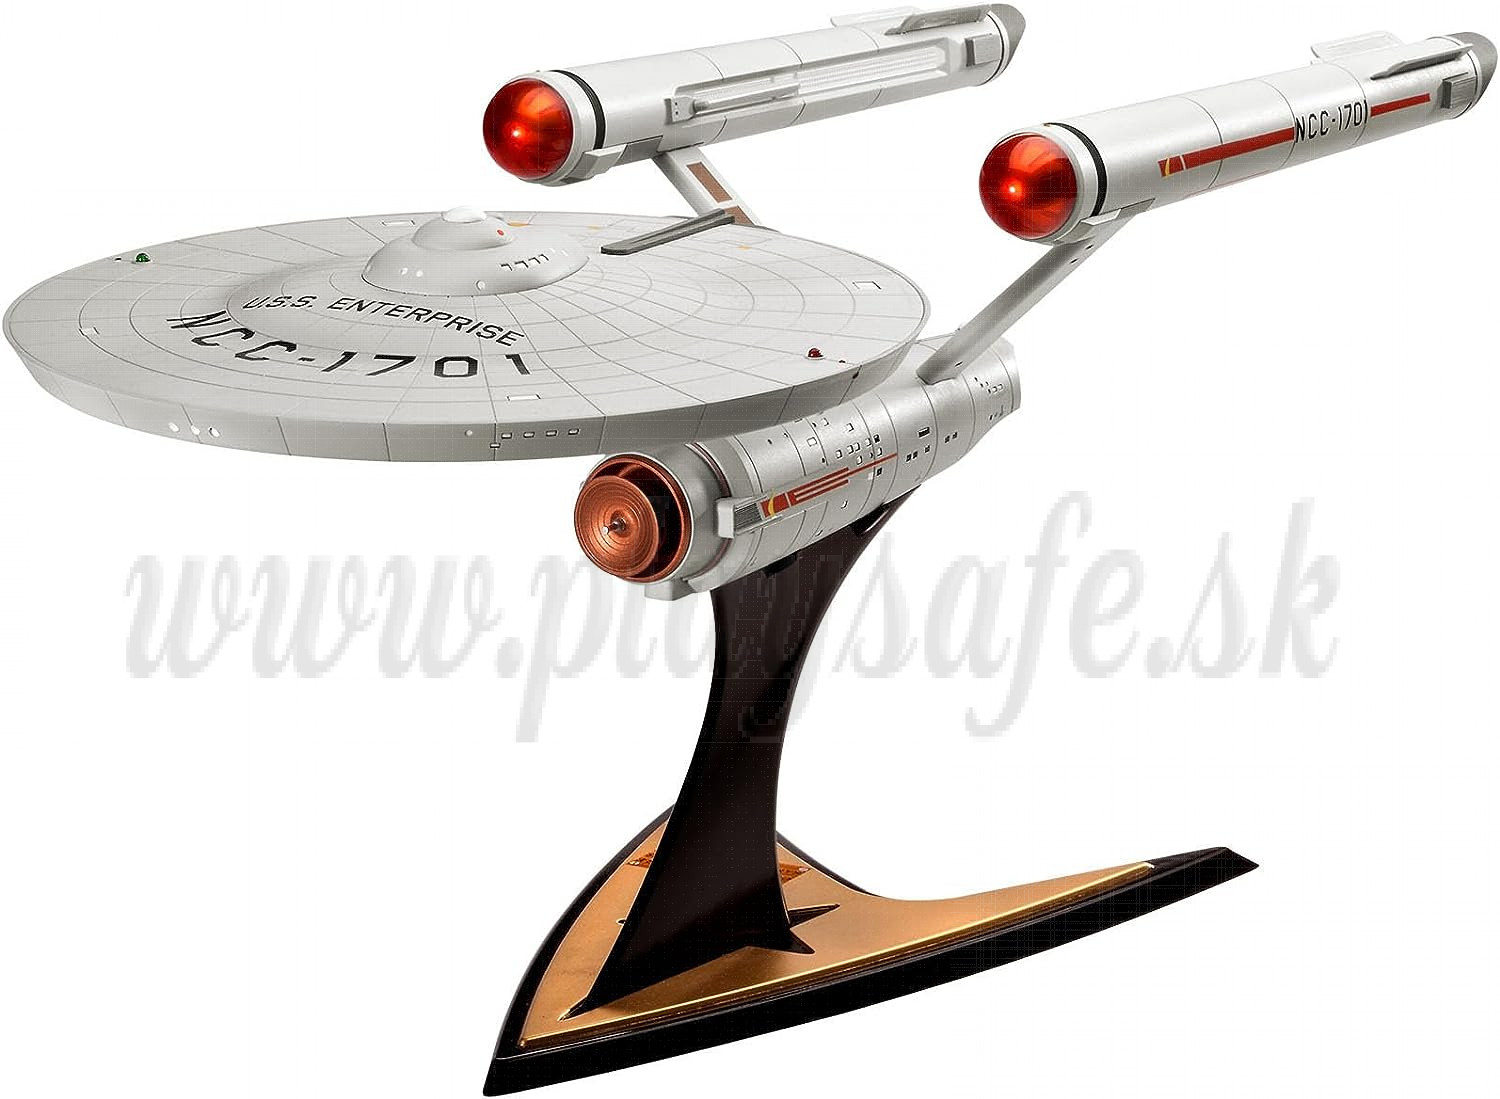 Revell Star Trek TOS Model Kit 1/600 U.S.S. Enterprise NCC-1701, 48 cm